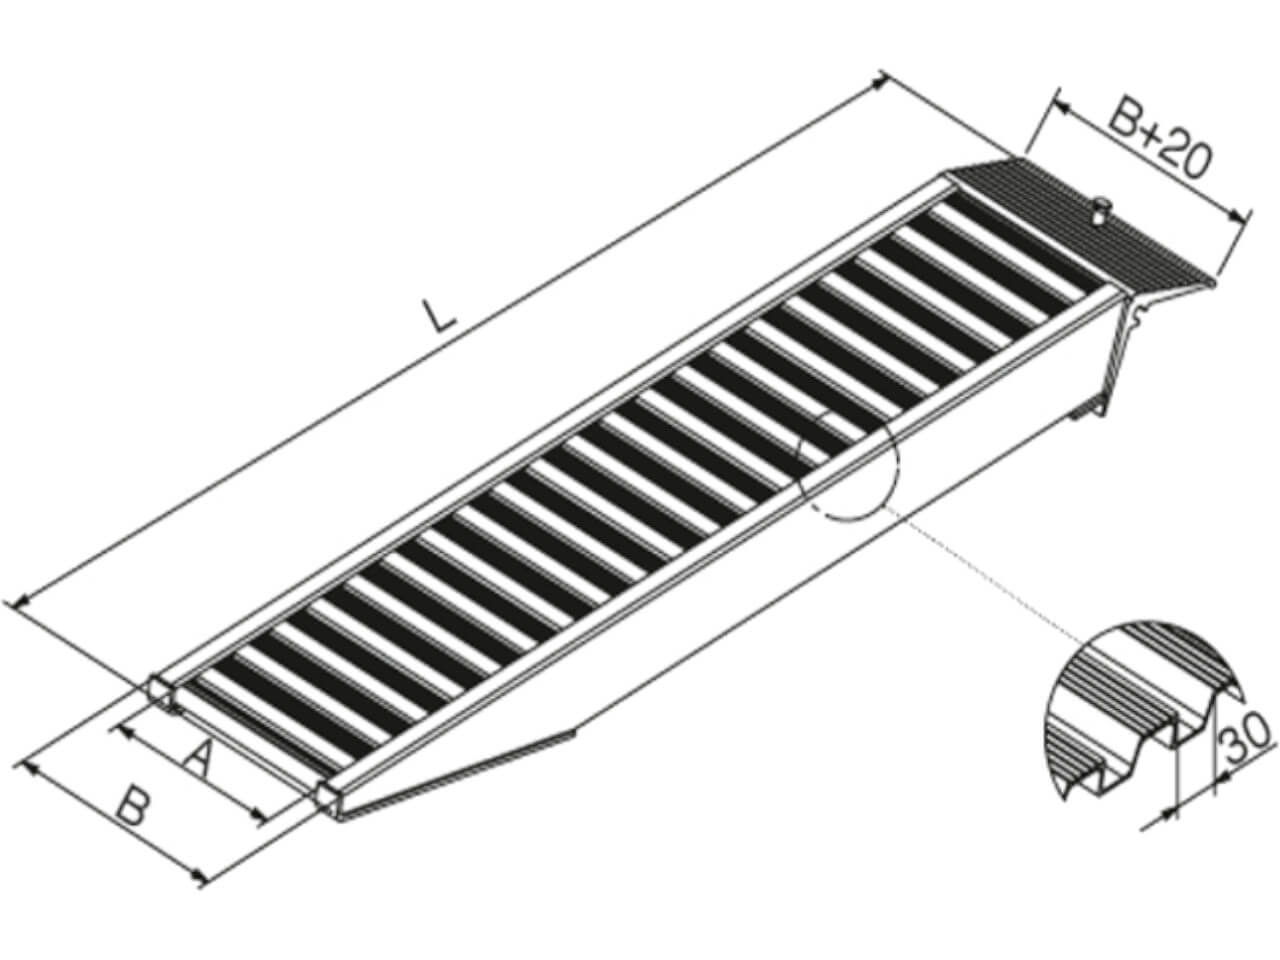 technische zeichnung zum geschlossenen sprossenprofil einer avs 65 und avs 90 auffahrrampe